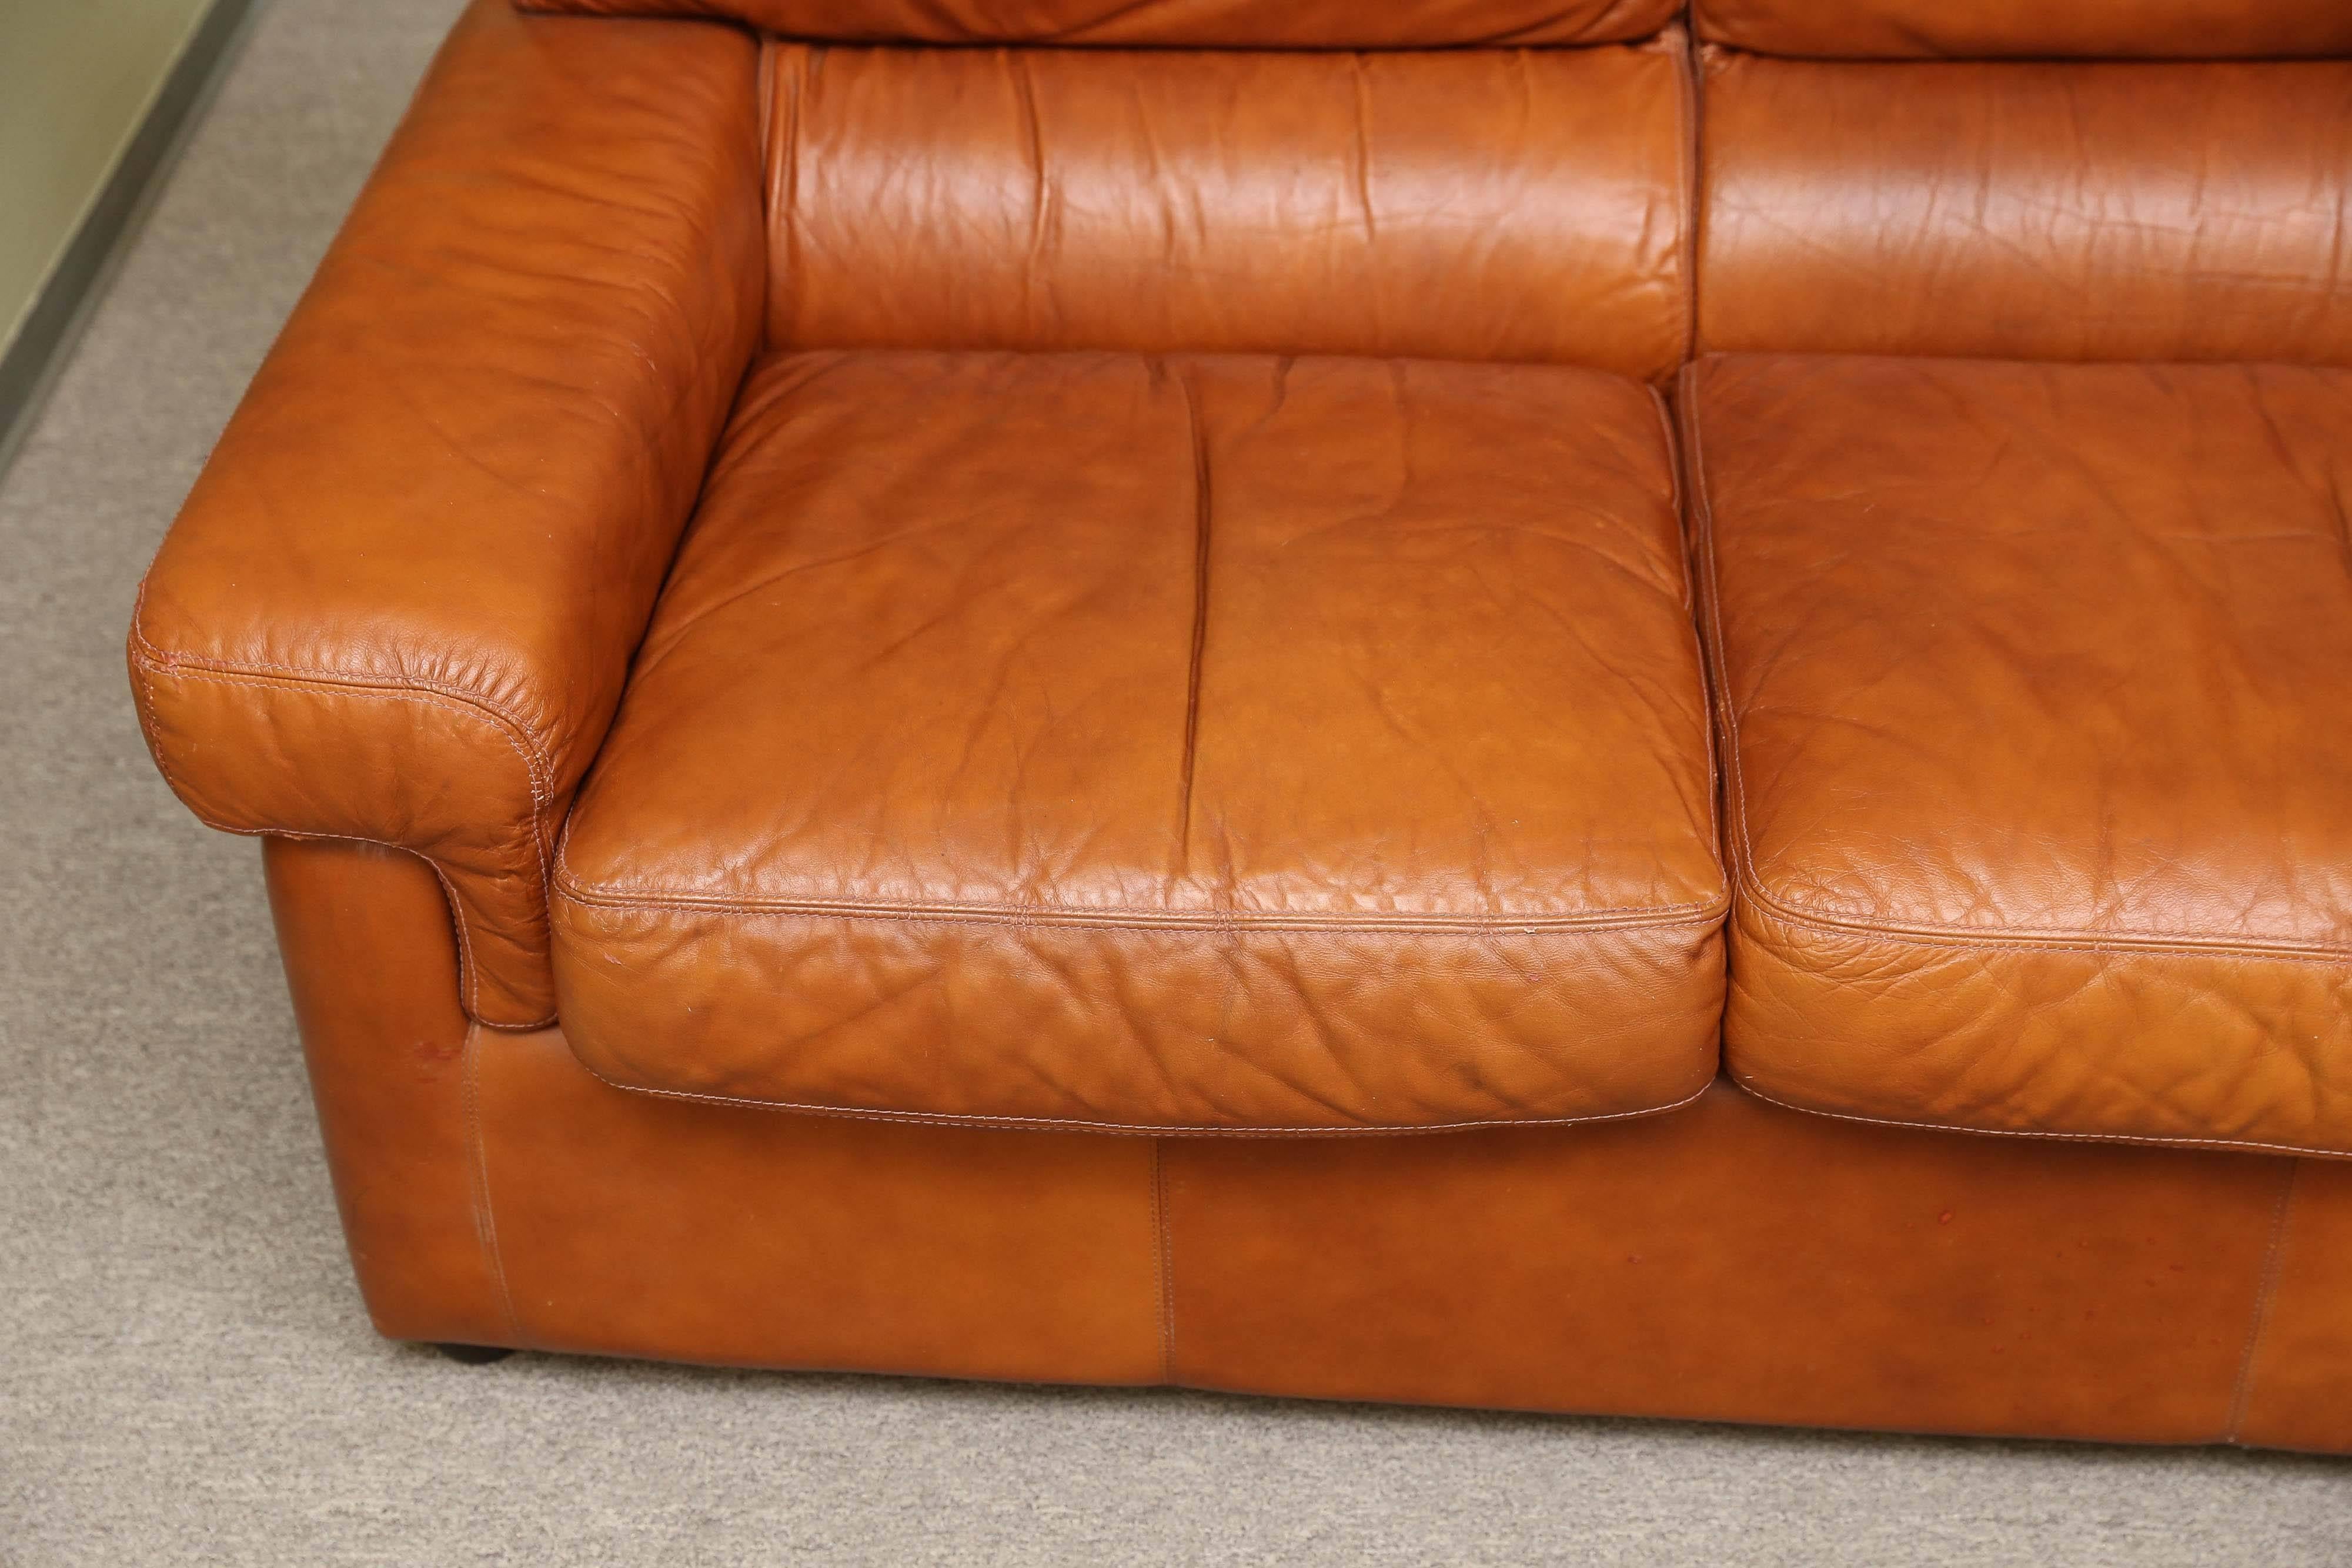 Das Sofa ist aus hochwertigem Leder gefertigt. Die Rückenlehne und die Sitzfläche des Sofas sind aus drei Kissen zusammengesetzt. Die Armlehnen sind mit Leder bezogen und haben eine weiche Füllung für zusätzlichen Komfort.
Das Sofa ruht auf kleinen